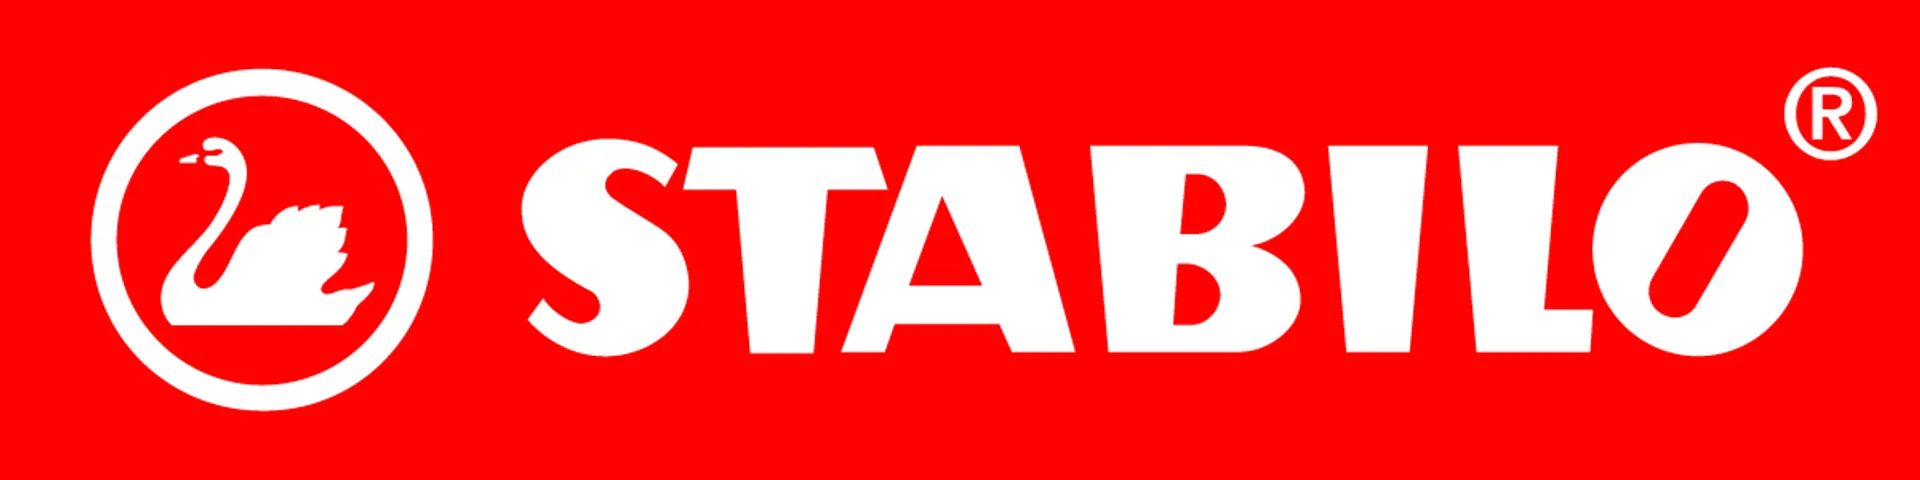 STABILO logo